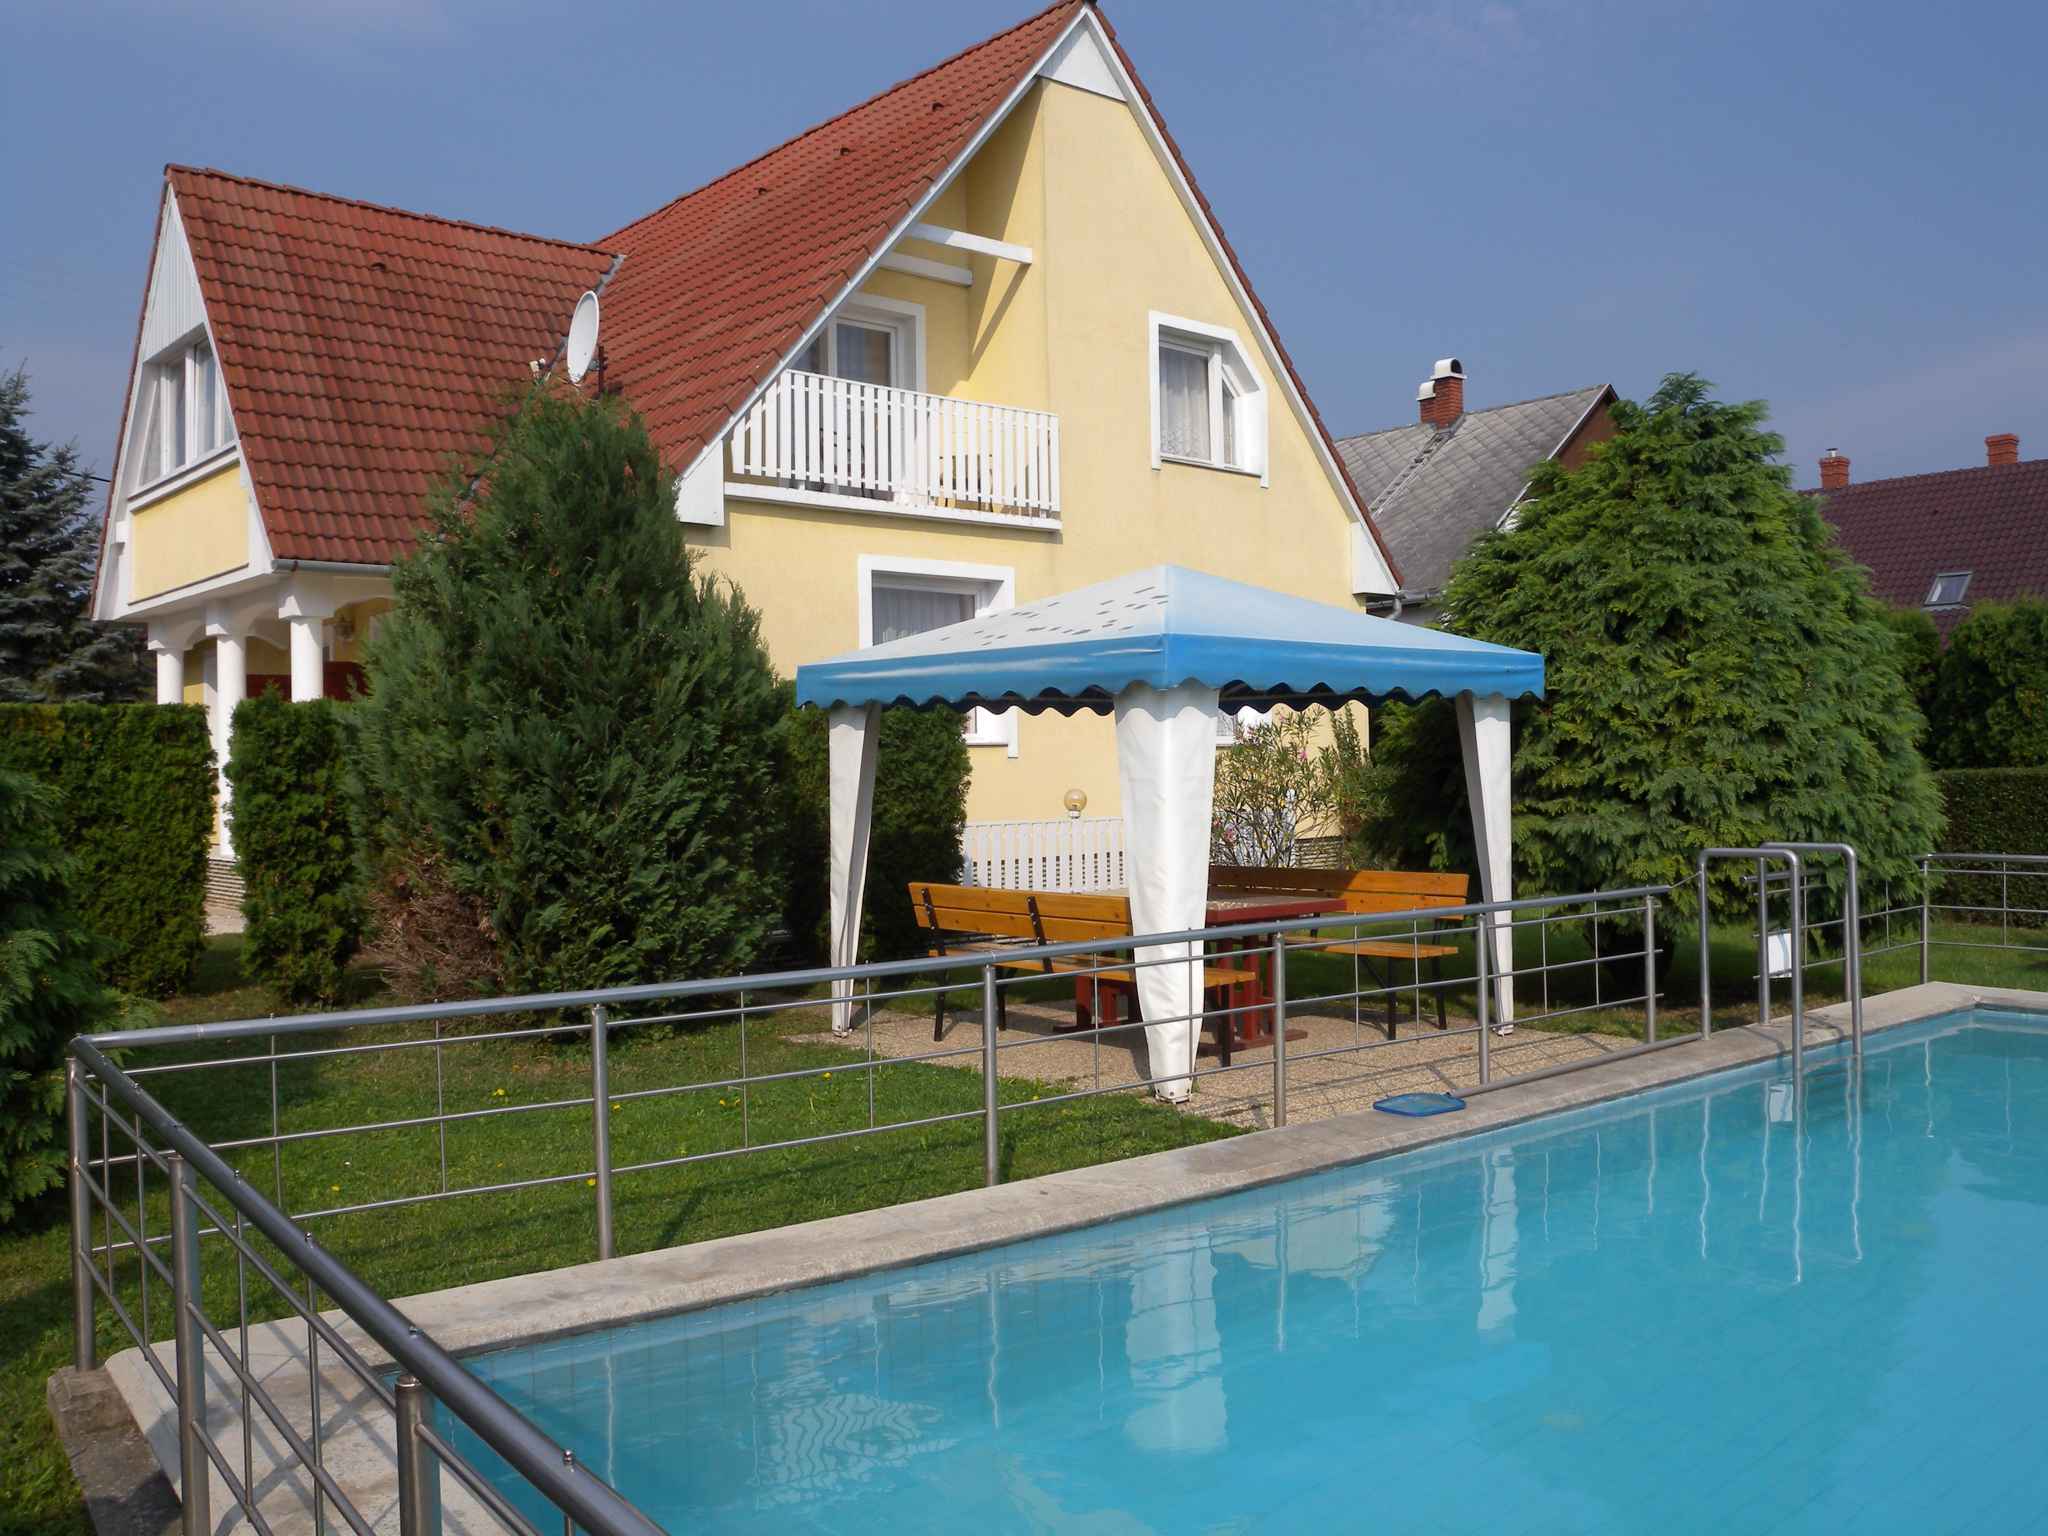 Ferienwohnung mit Pavillon und Pool  in Ungarn